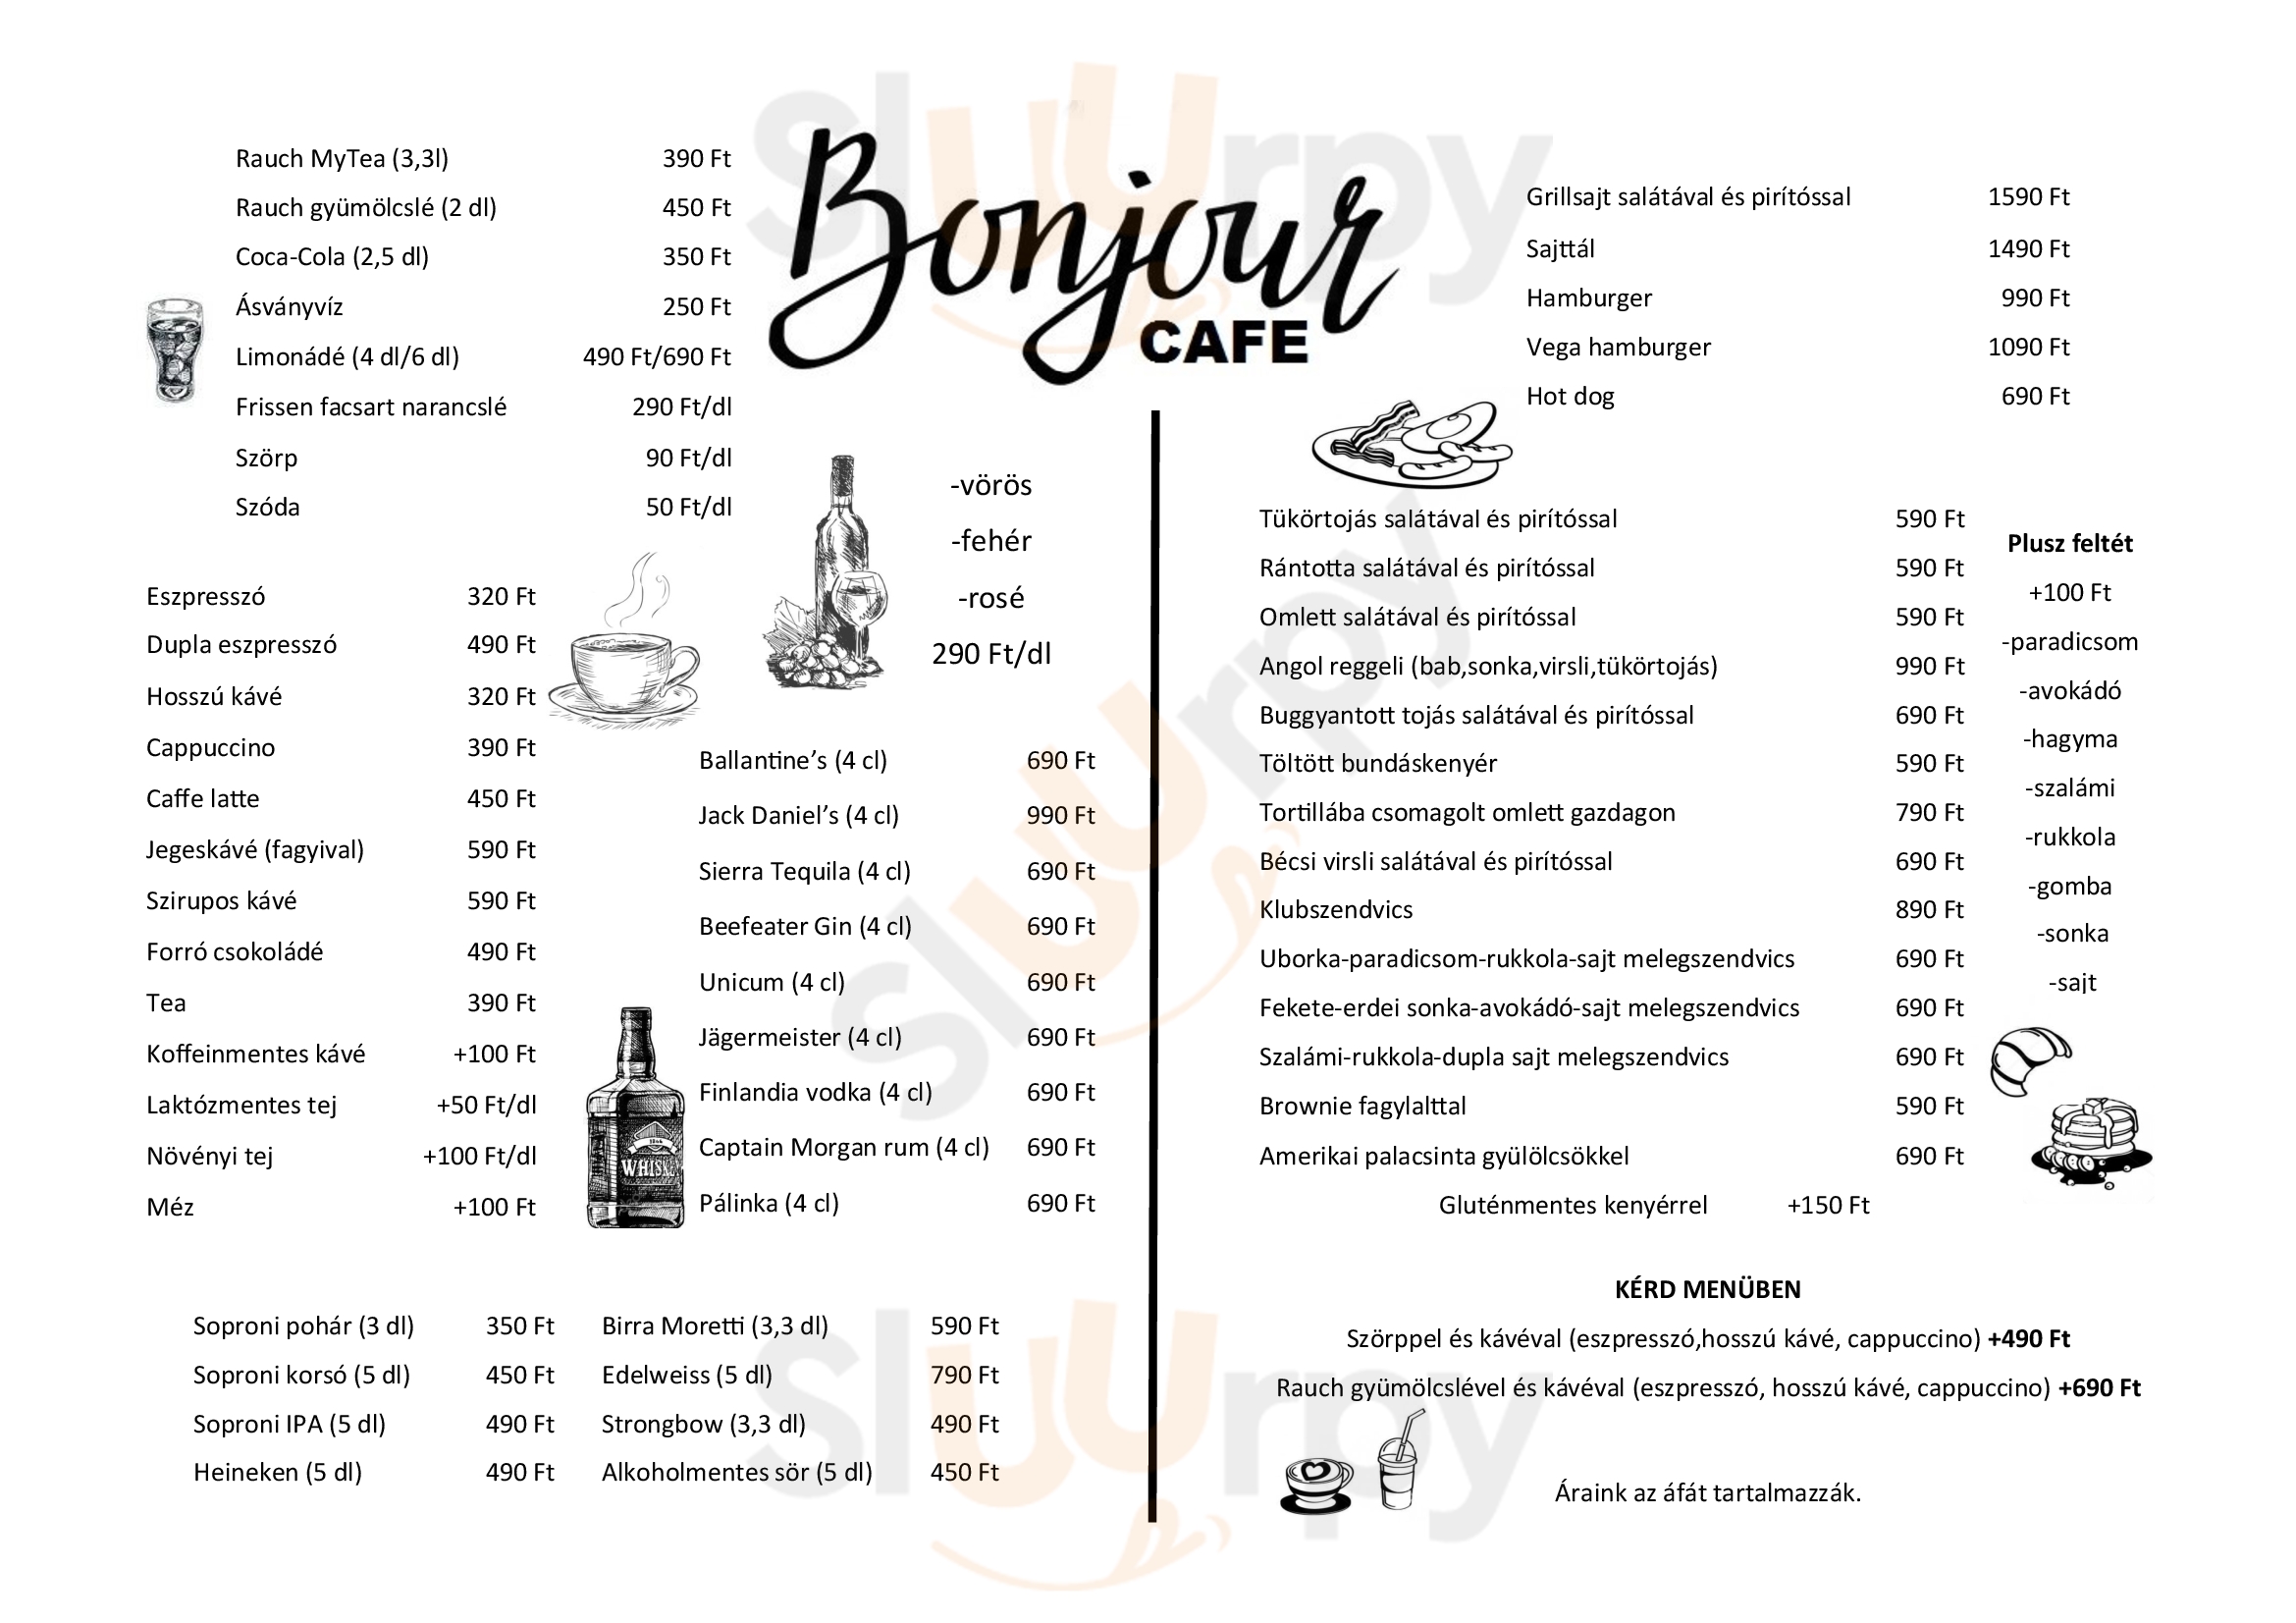 Bonjour Cafe Budapest Menu - 1